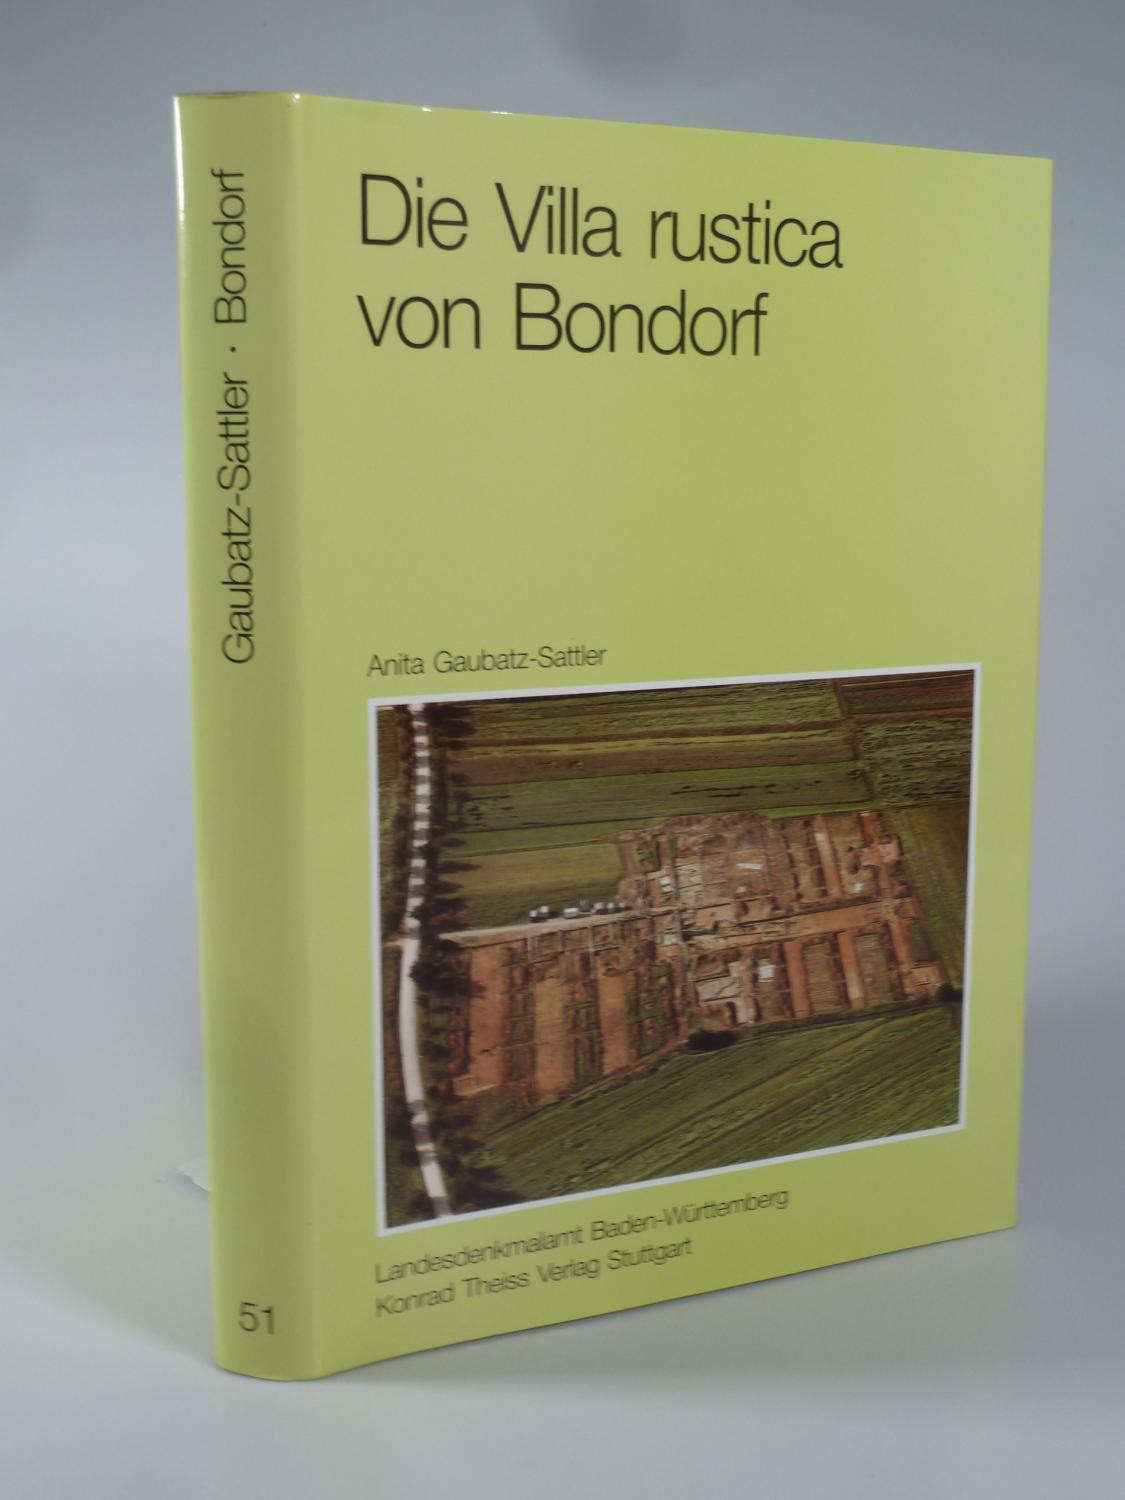 Die Villa rustica von Bondorf. - GAUBATZ-SATTLER, Anita.